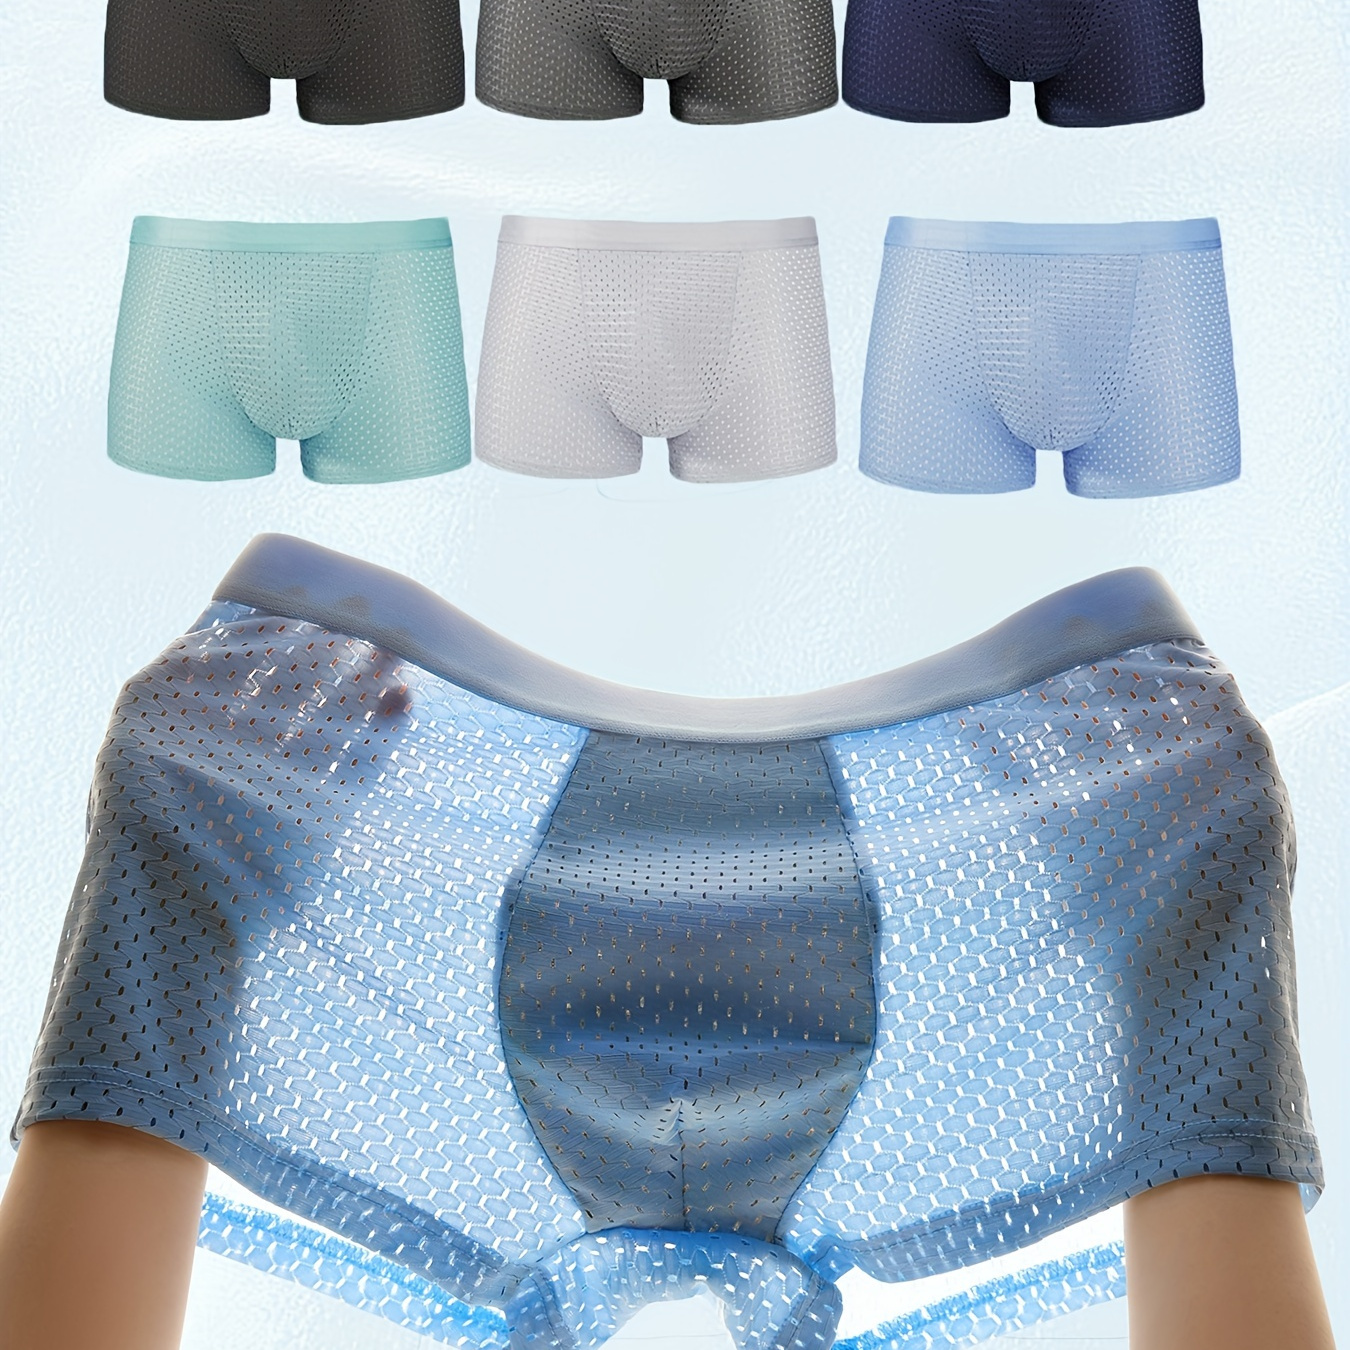 6 peças de roupa íntima masculina, cuecas boxer de seda gelada, shorts, malha interna antibacteriana de grafeno, confortáveis e elásticas.